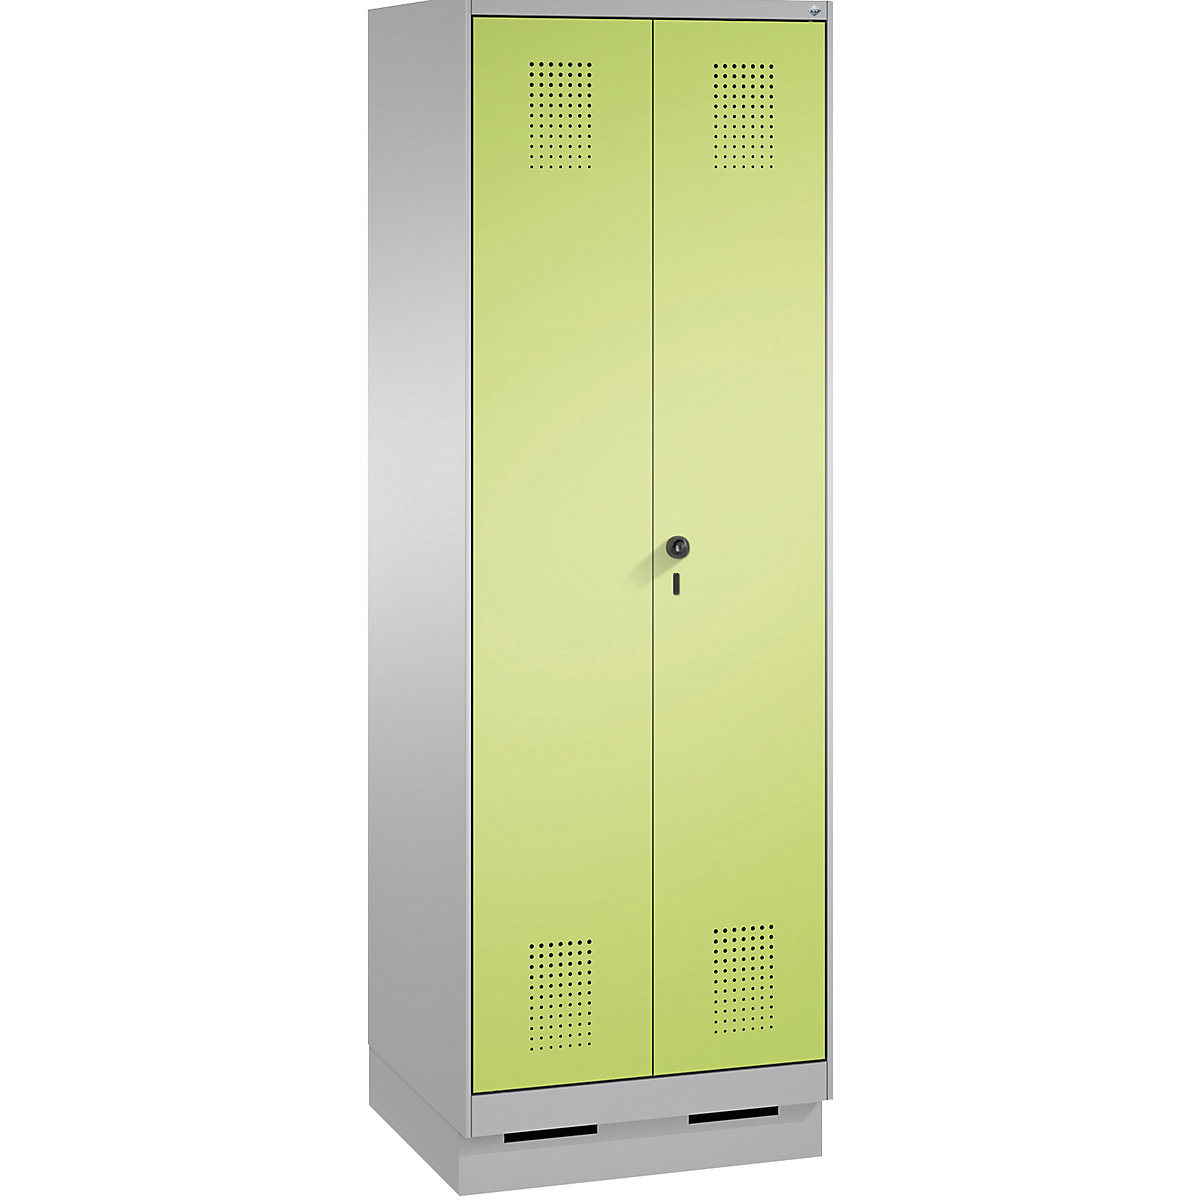 EVOLO takarítószer-/készüléktároló szekrény – C+P, rövidített válaszfal, 6 akasztó, rekeszek 2 x 300 mm, lábazattal, fehéralumínium / viridinzöld-15